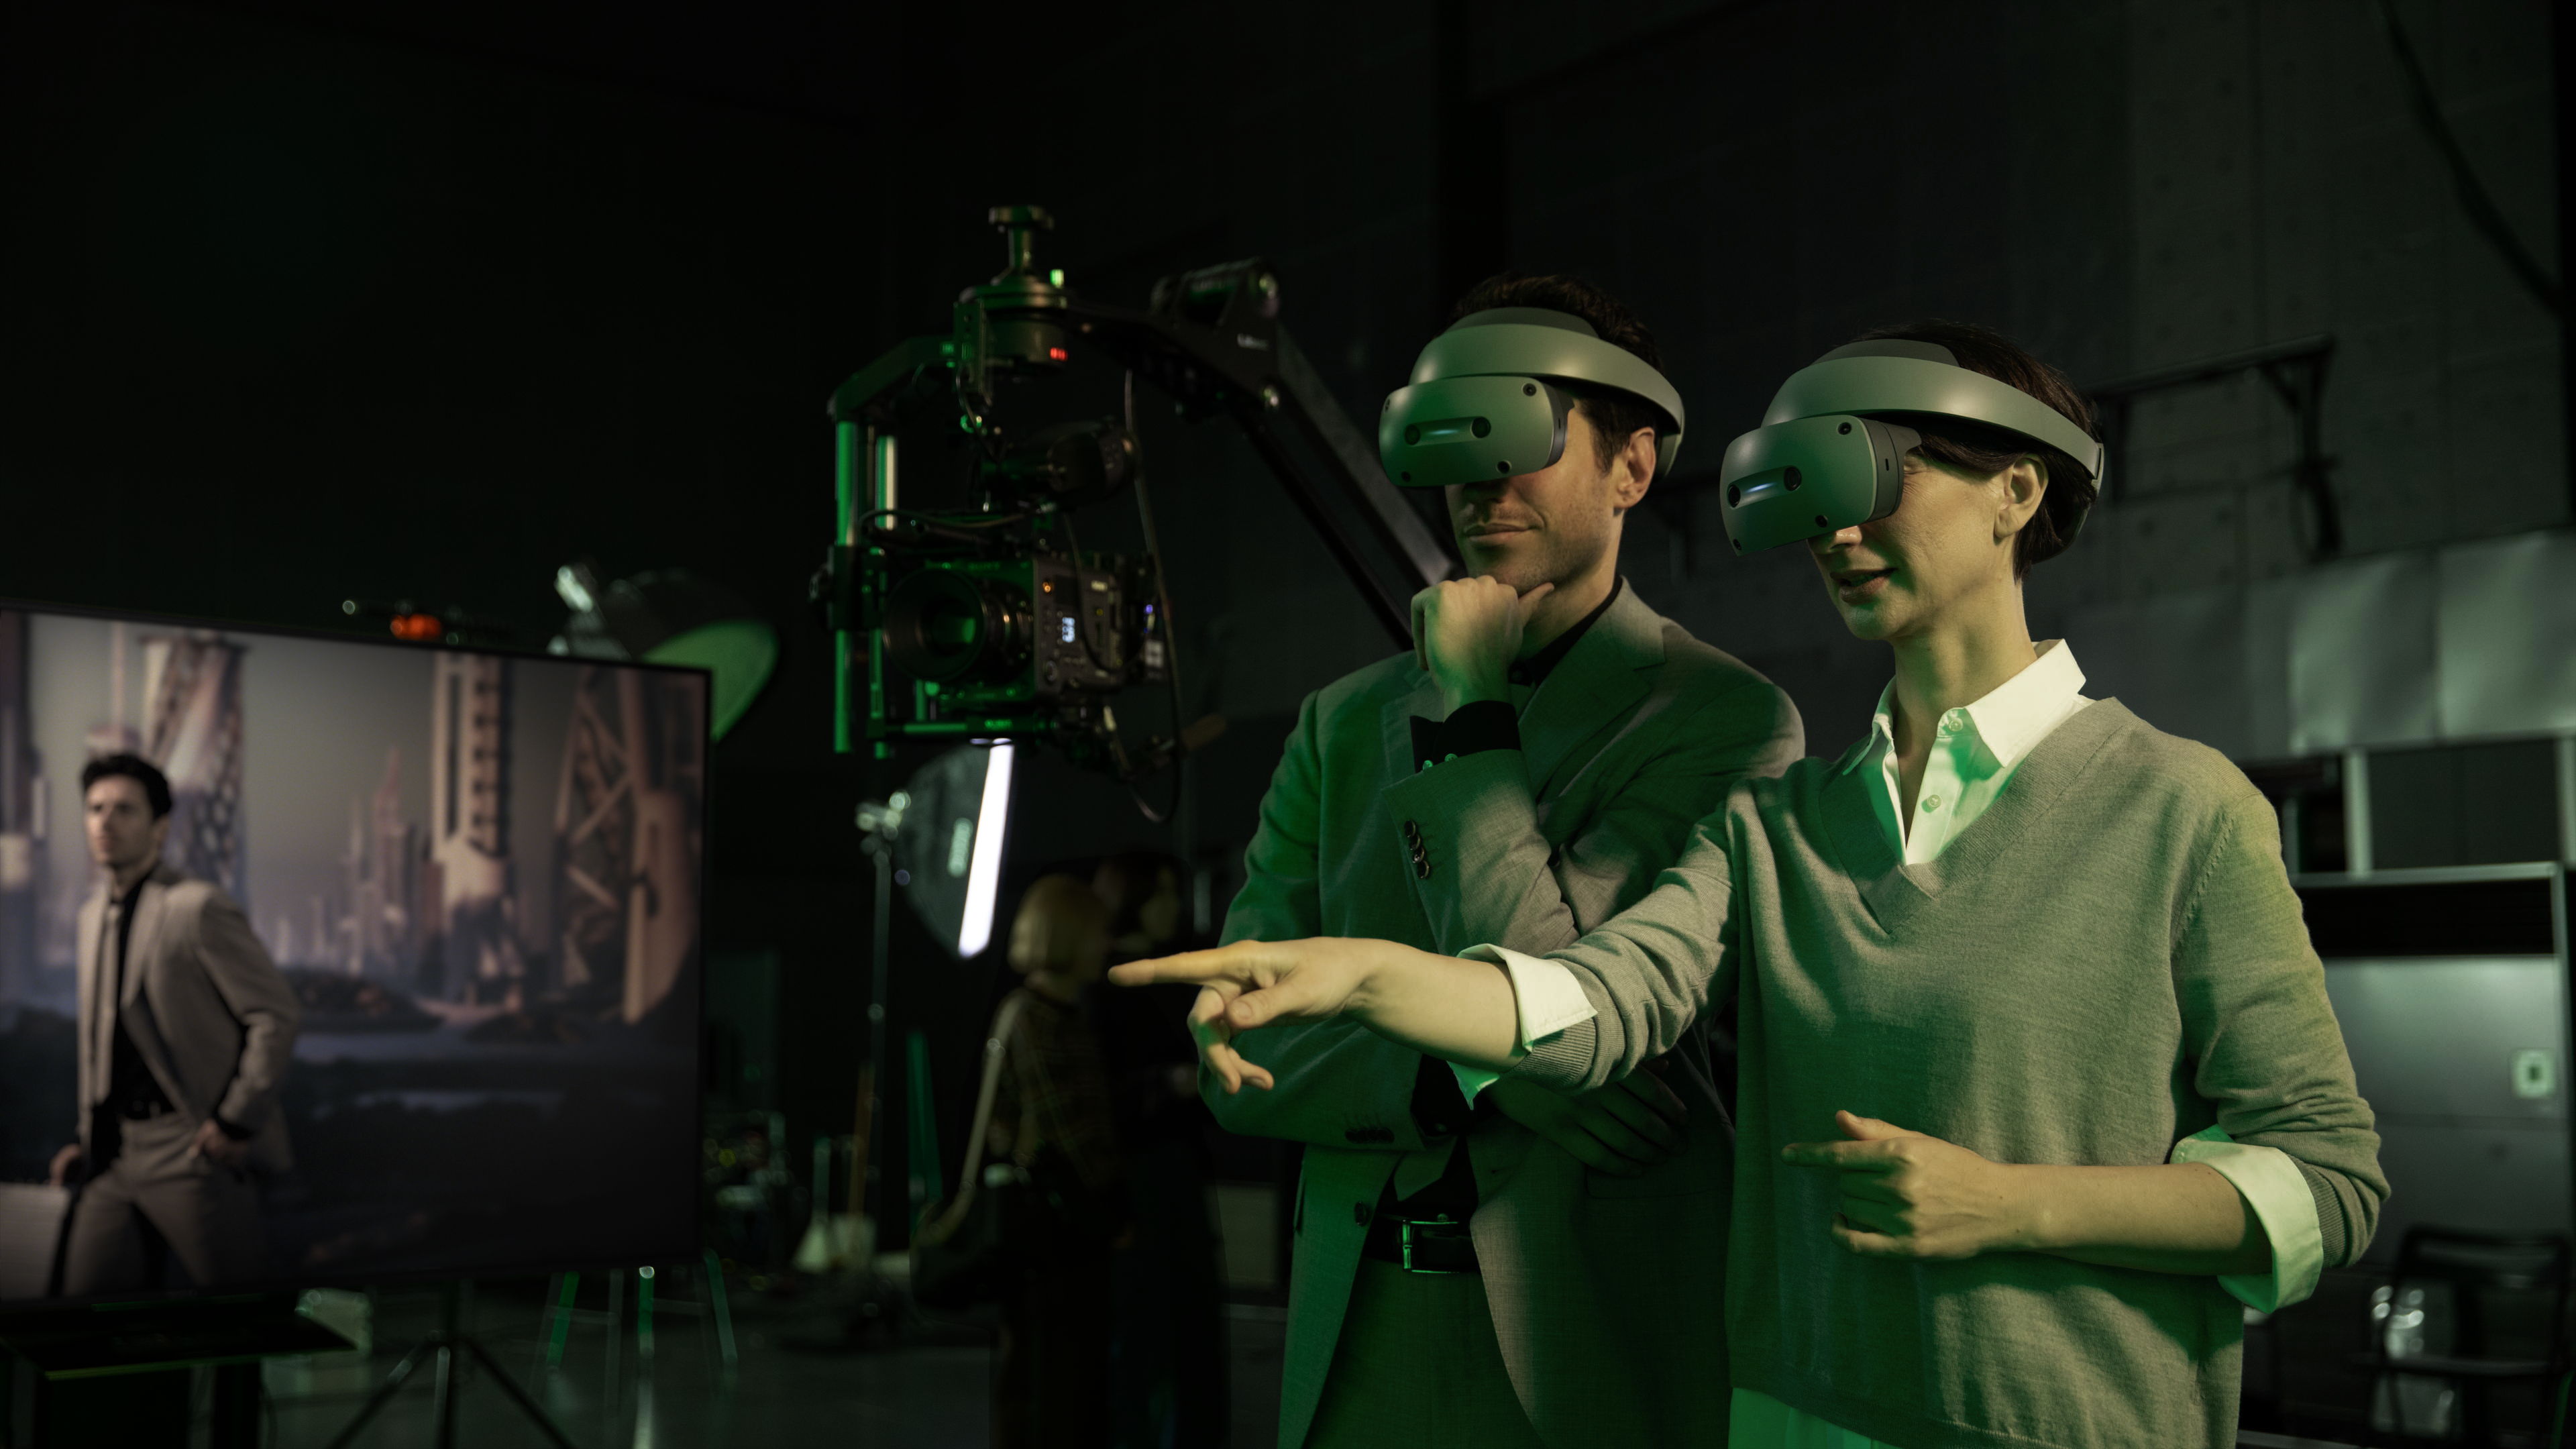 System som används för filmproduktion med 3D-teknik